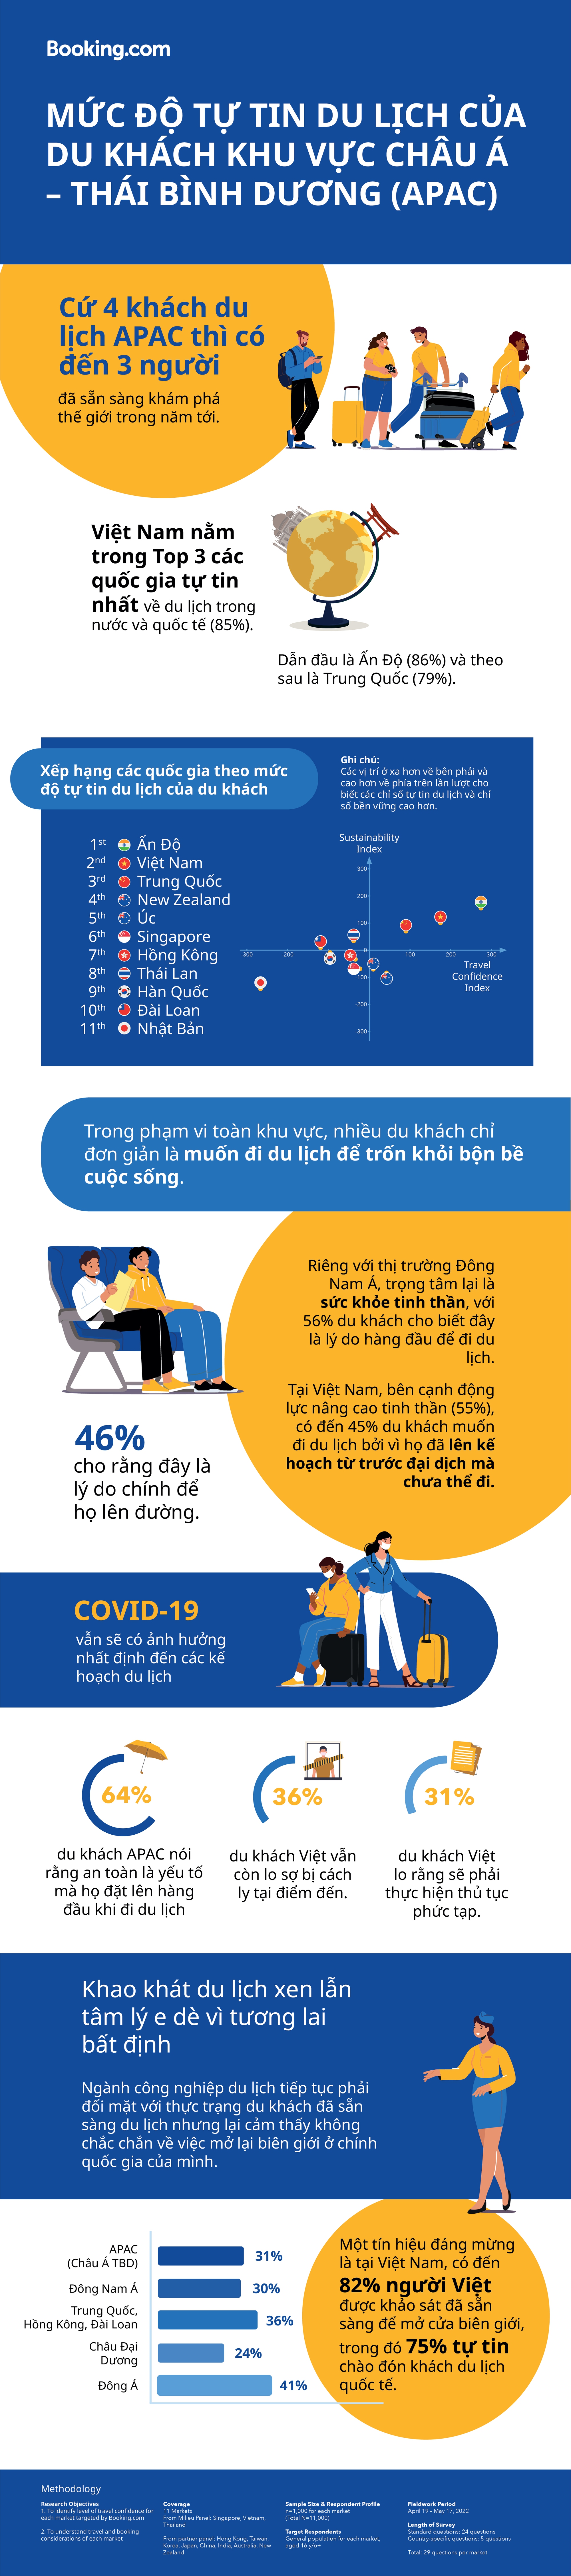 Người Việt Nam lạc quan hàng đầu khu vực châu Á - Thái Bình Dương: 85% khách Việt có dự định đi du lịch trong 12 tháng sắp tới - Ảnh 1.